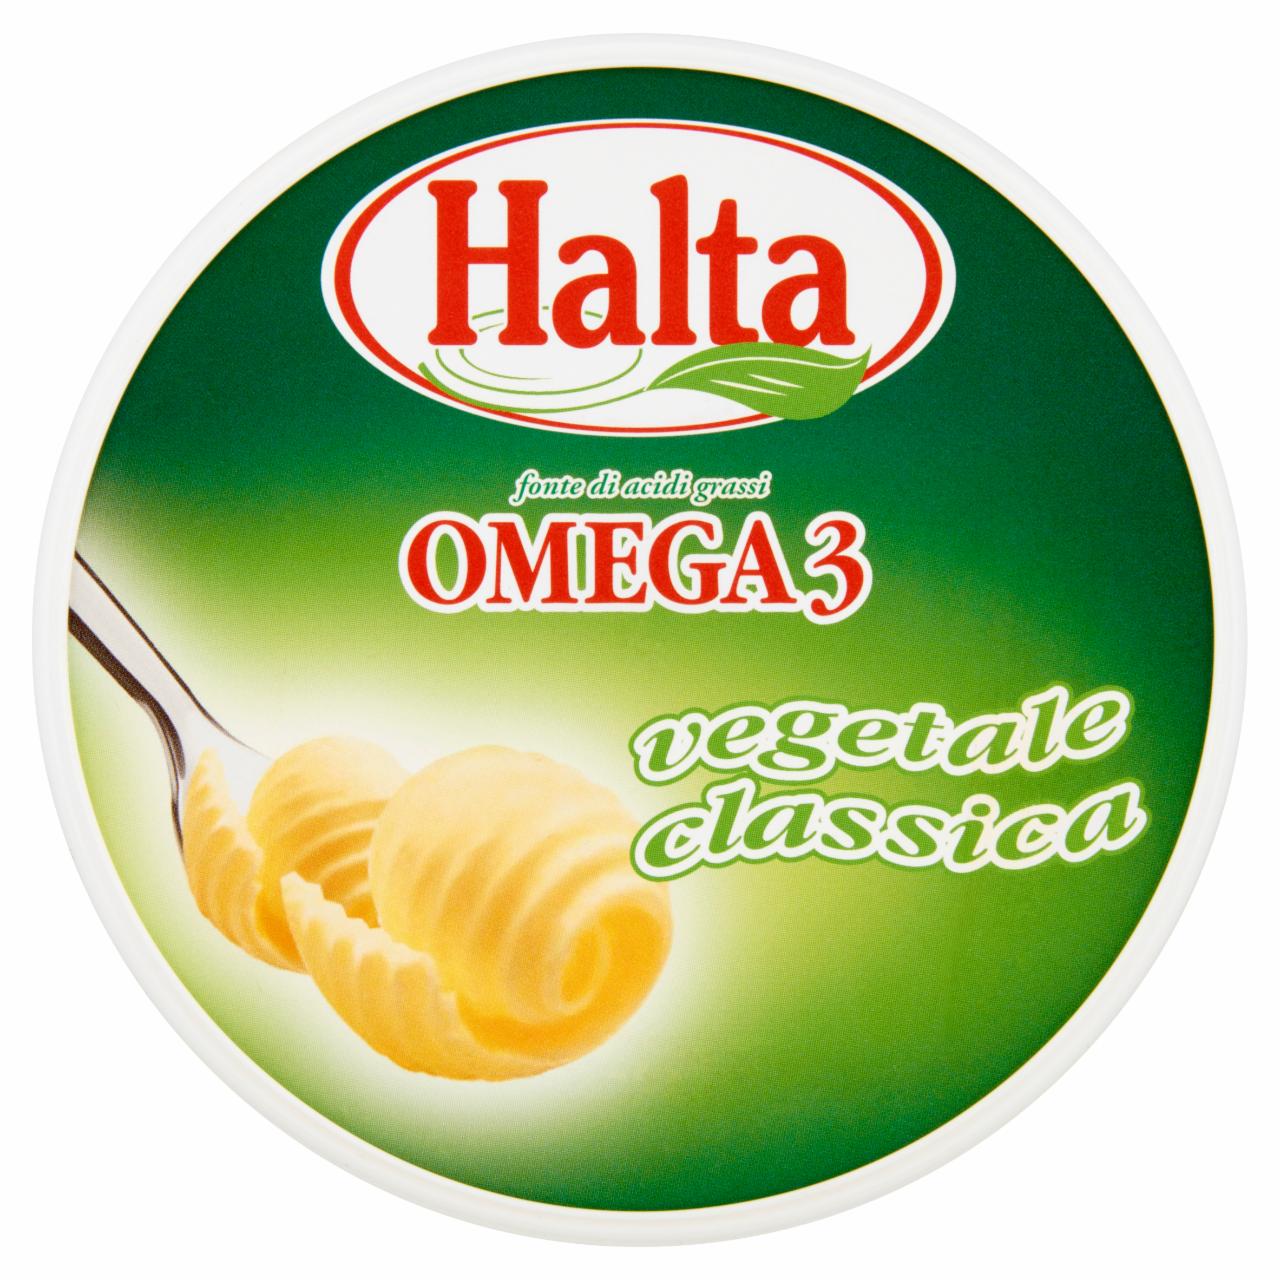 Képek - Halta Omega 3 margarin 500 g